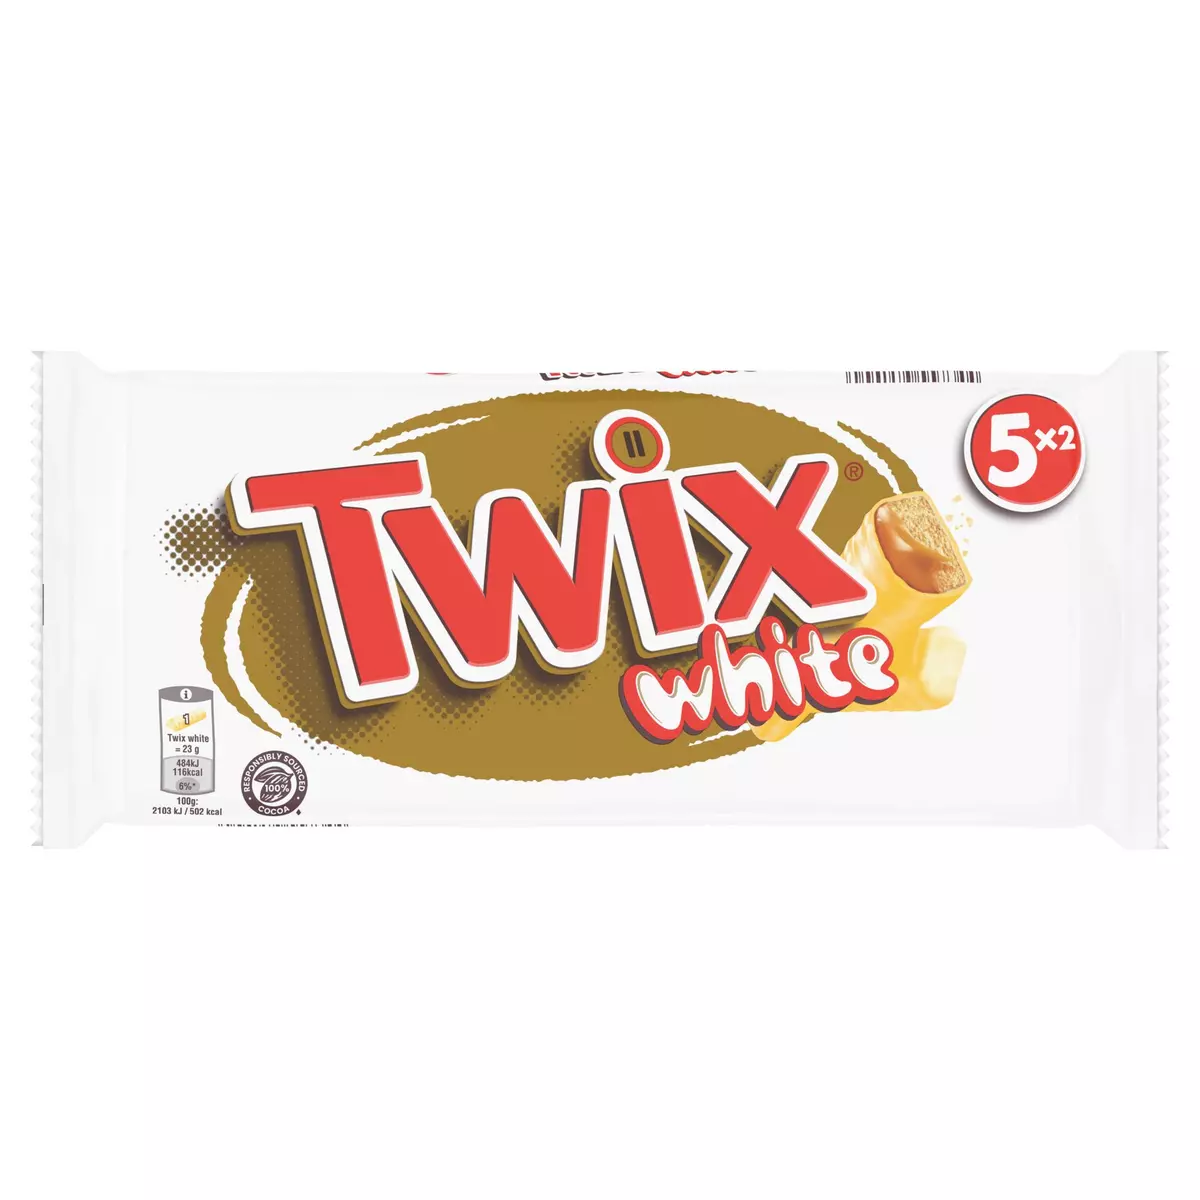 TWIX White barres au biscuit recouvert de caramel enrobés de chocolat blanc 5x2 barres 230g